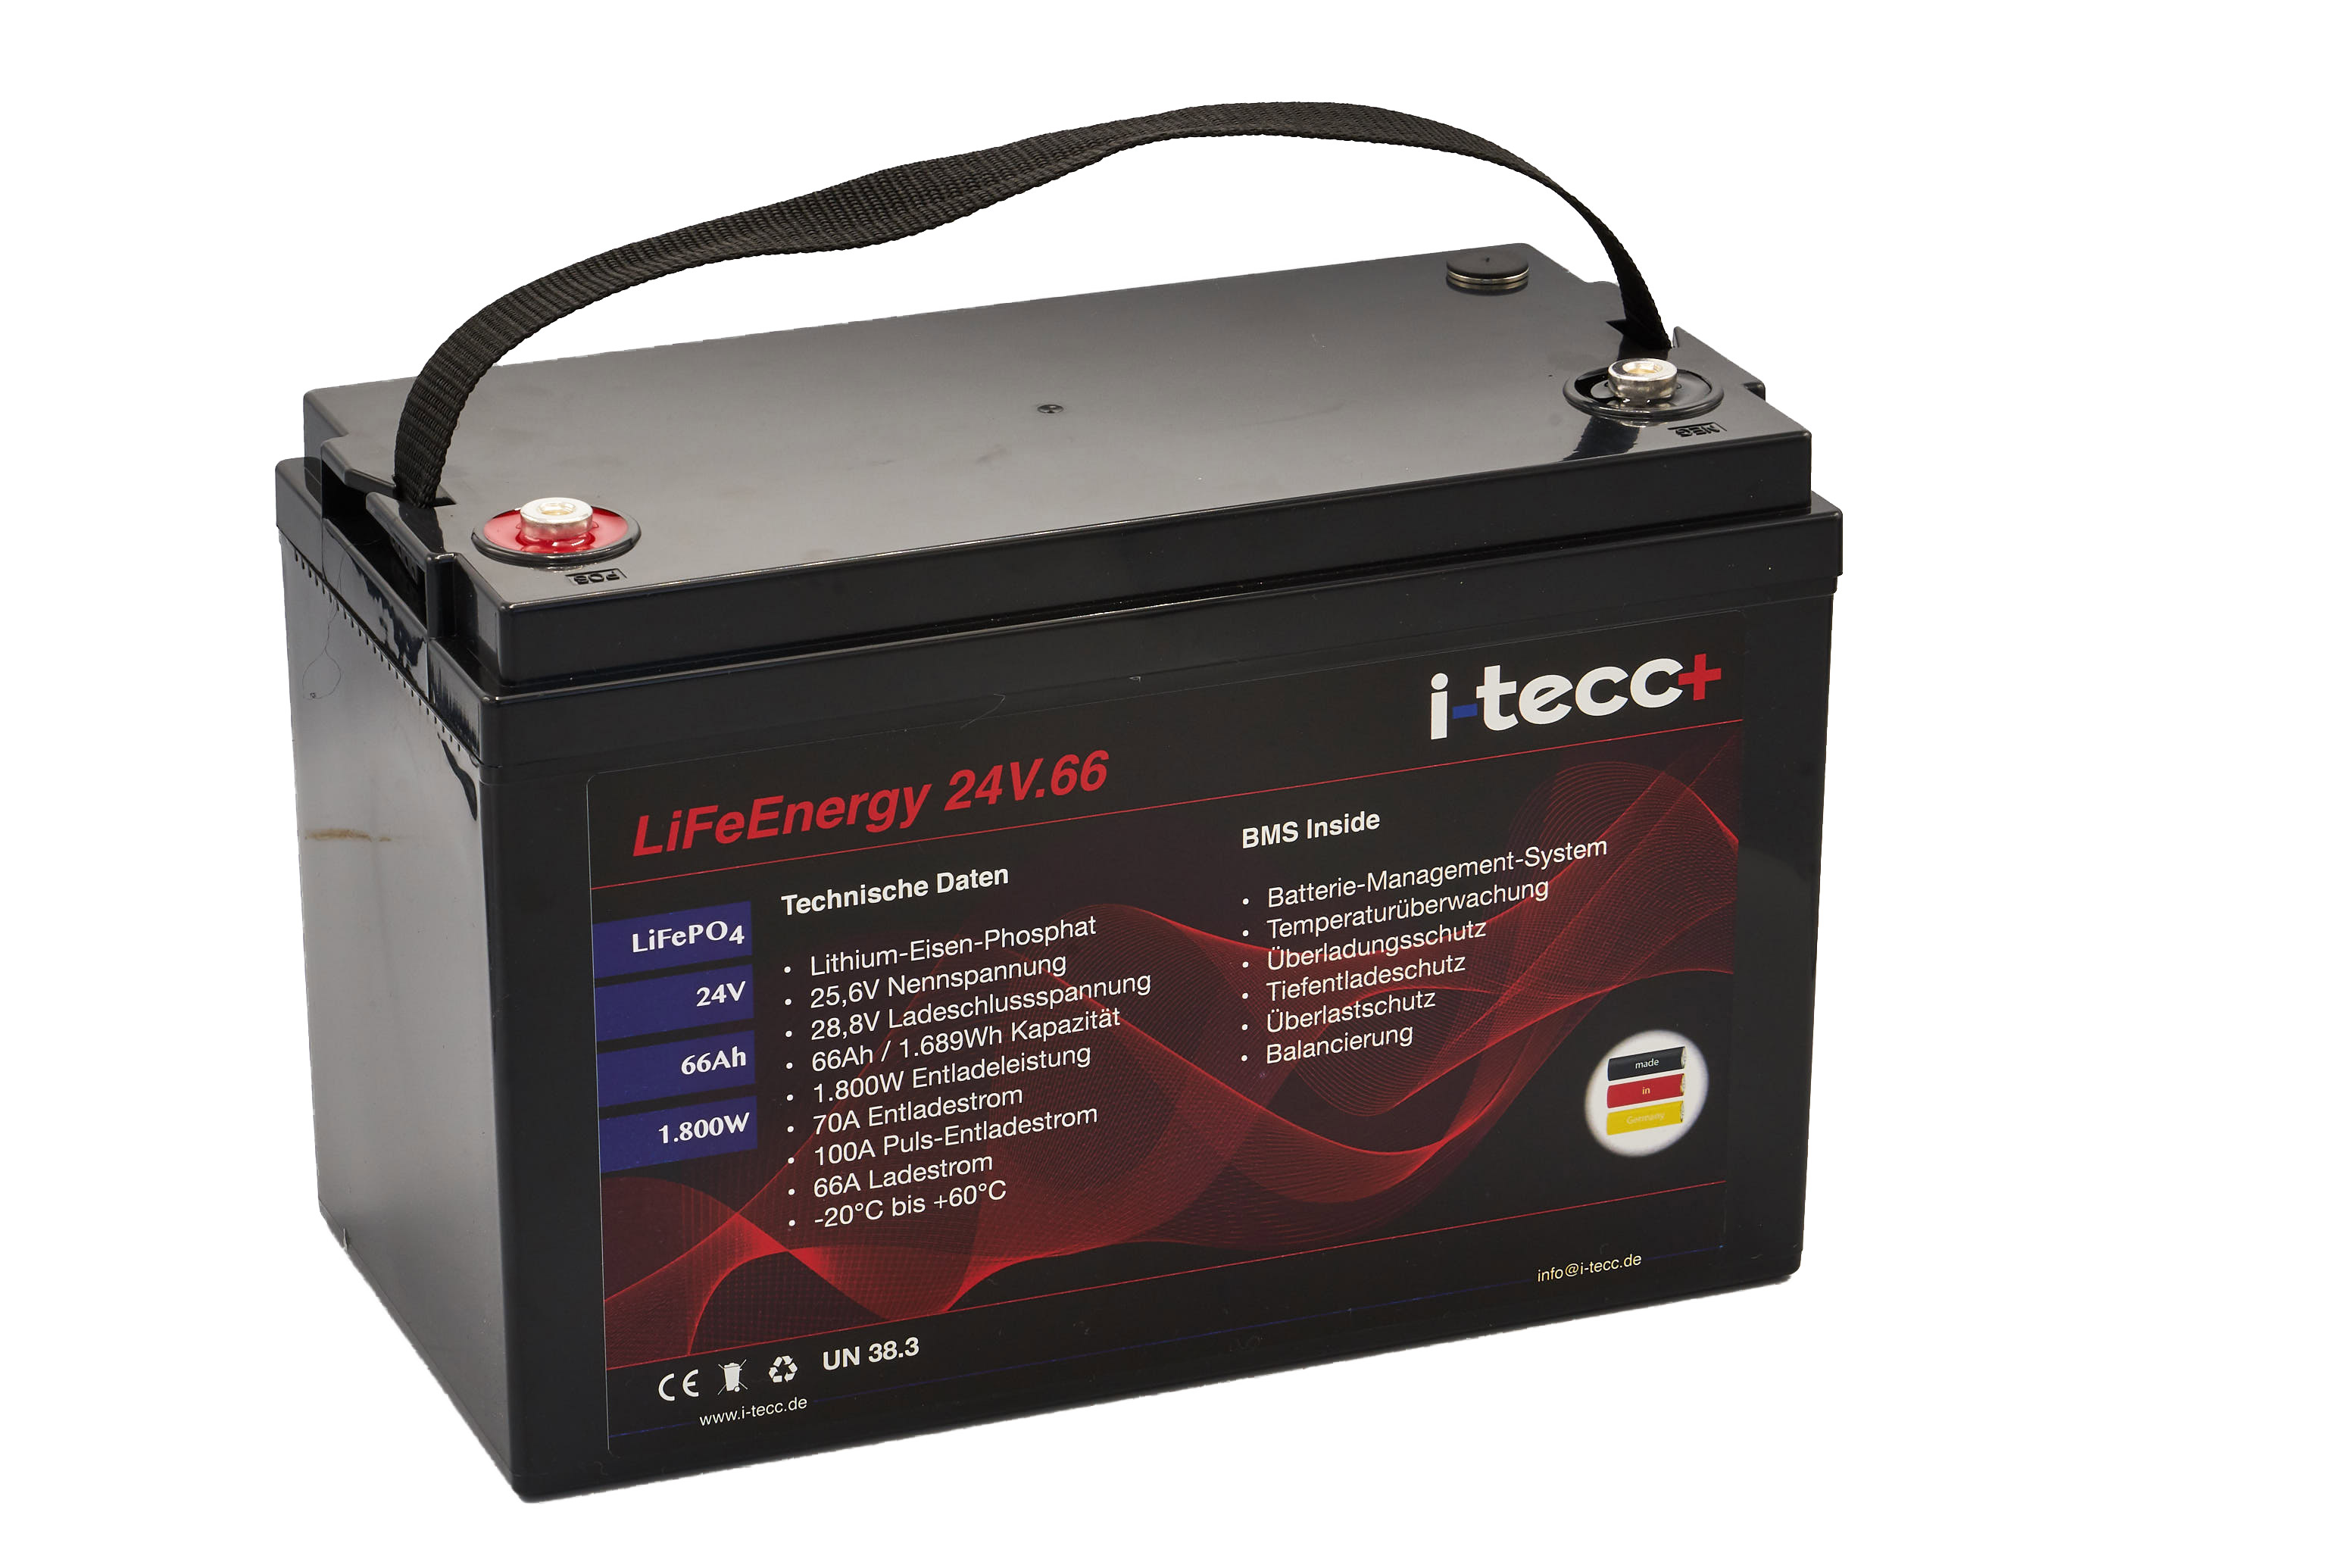 LiFePO4 Batterie 24V 68Ah - LiFeEnergy 24V.68